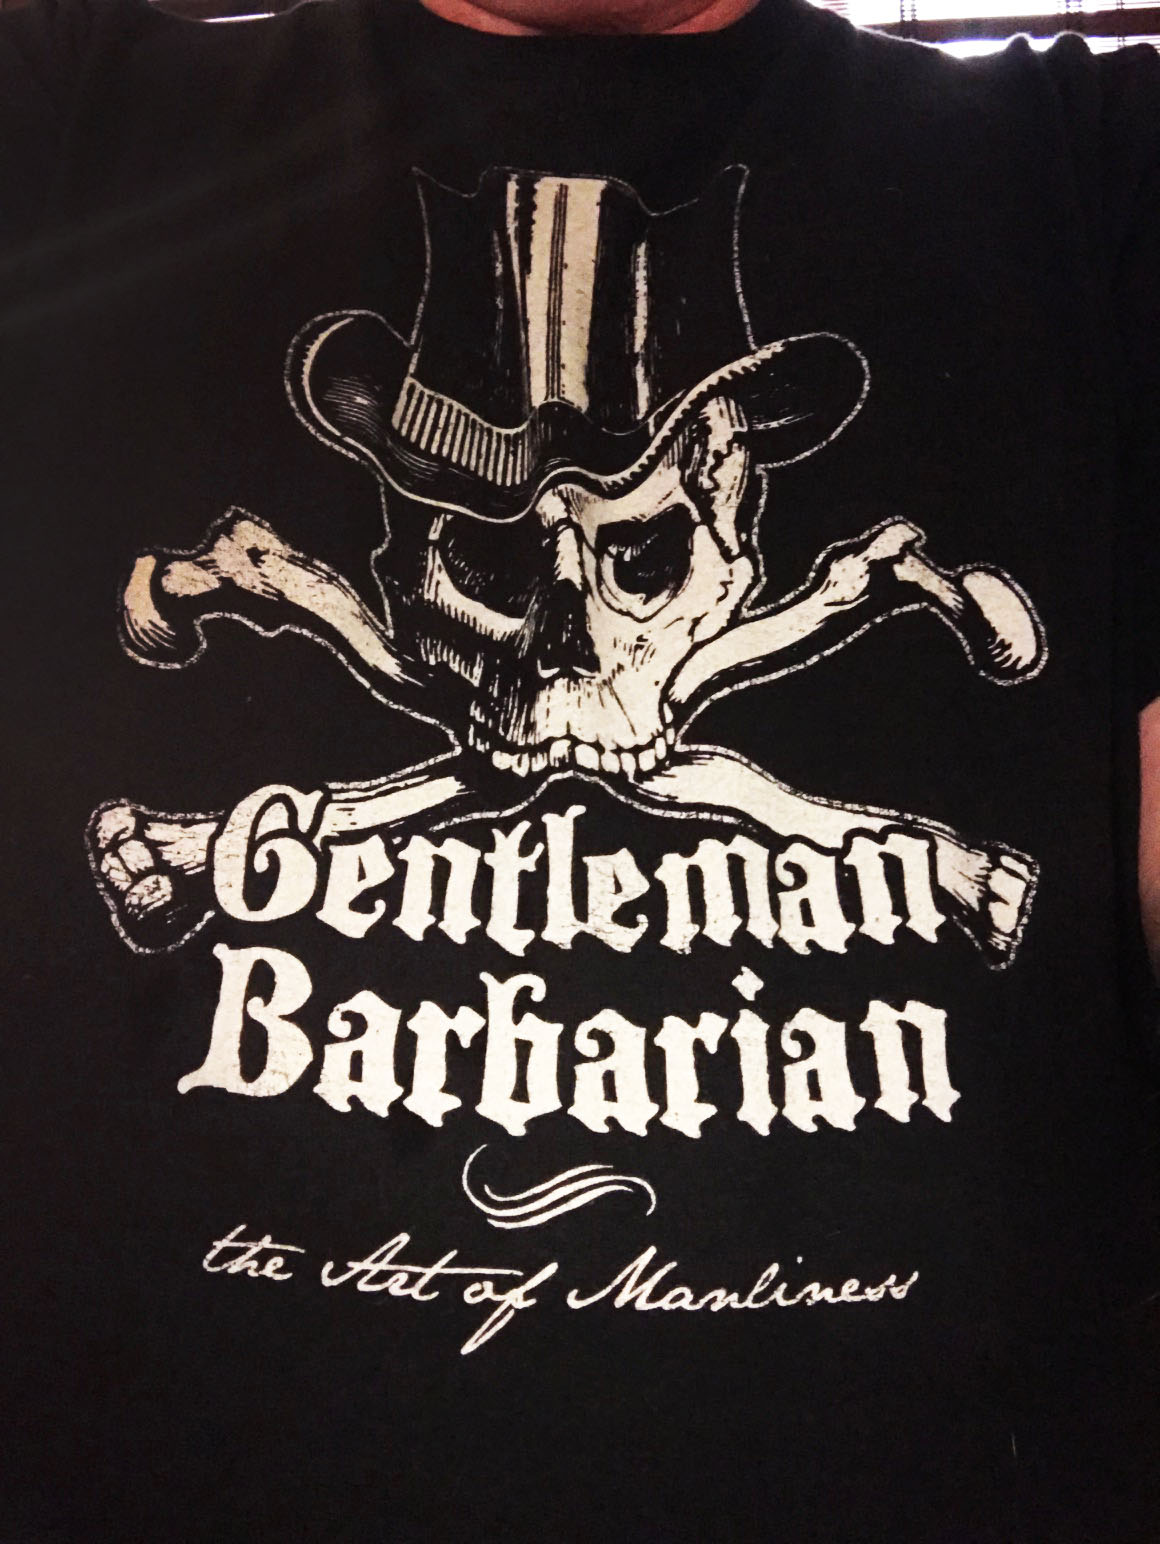 Gentlemanly Barbarian tee.jpg